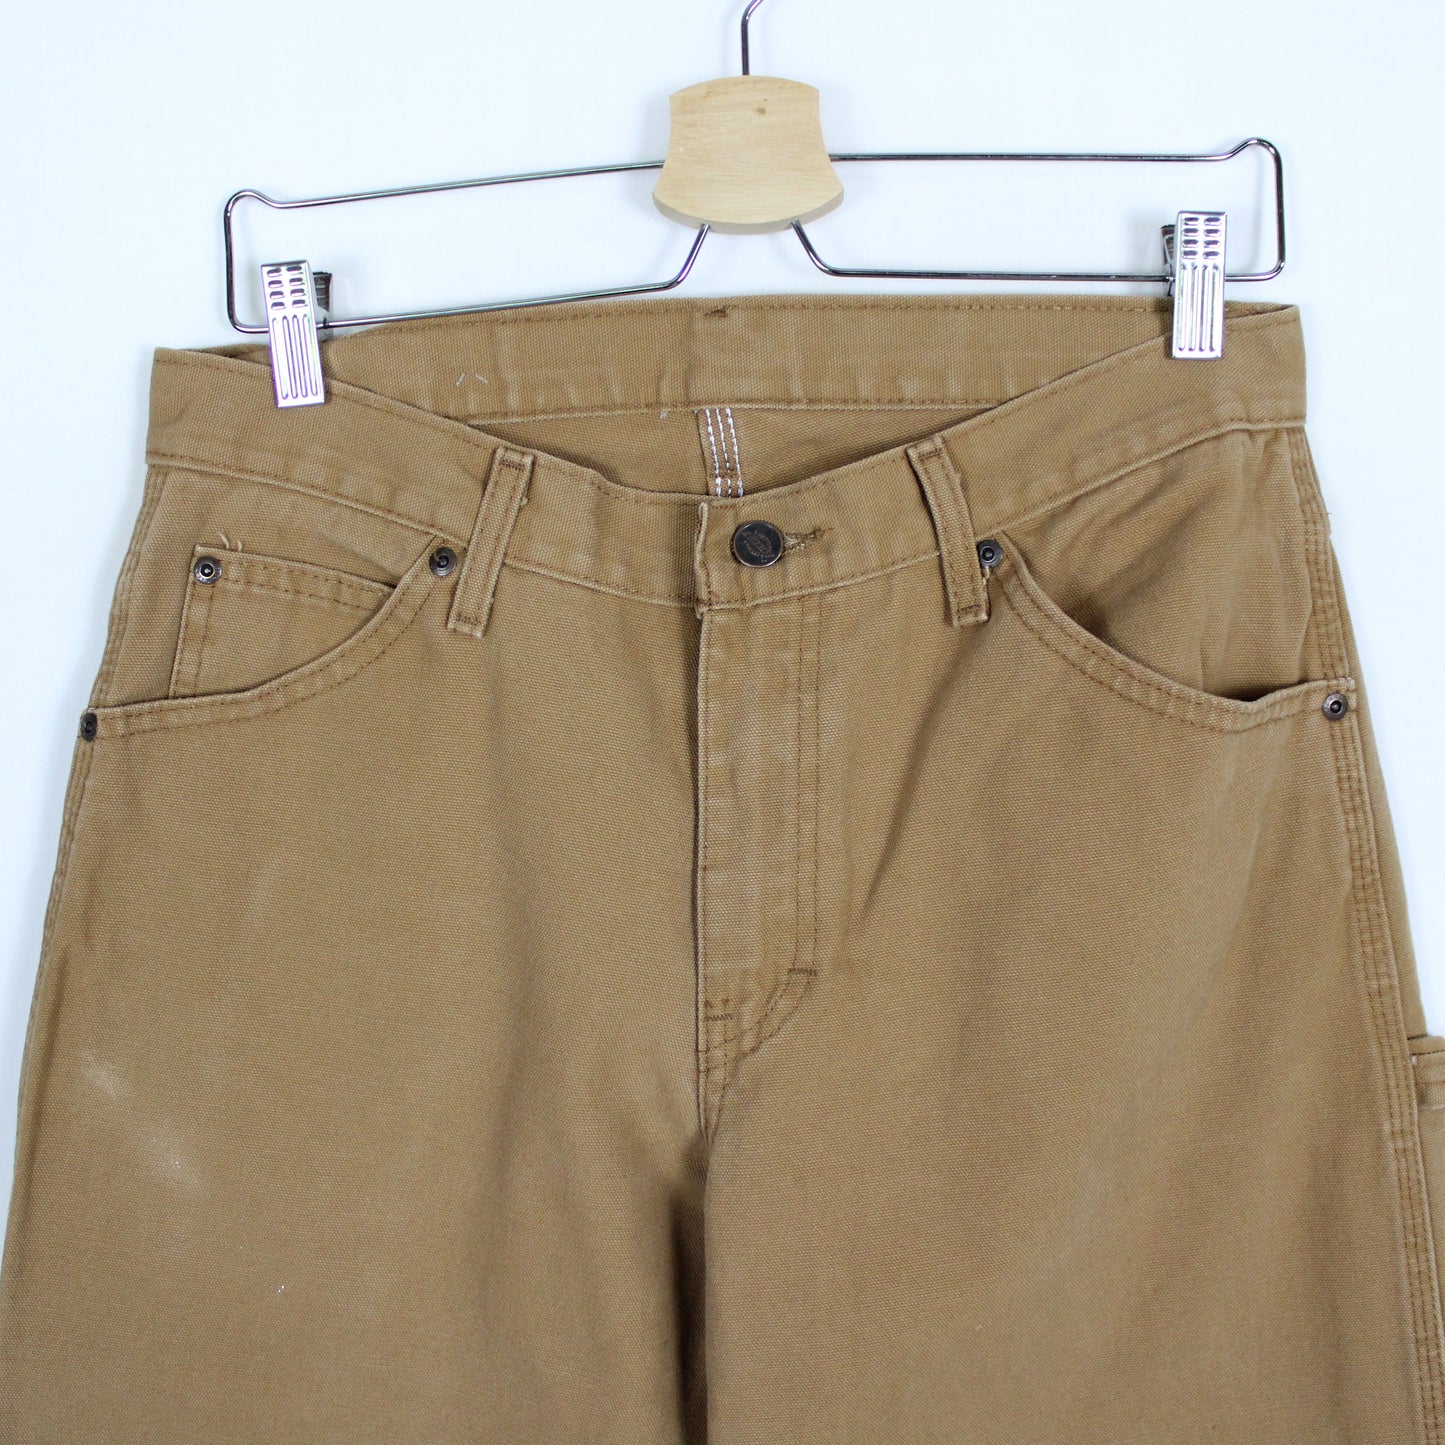 Vintage Dickies Carpenter Pants - 30x30